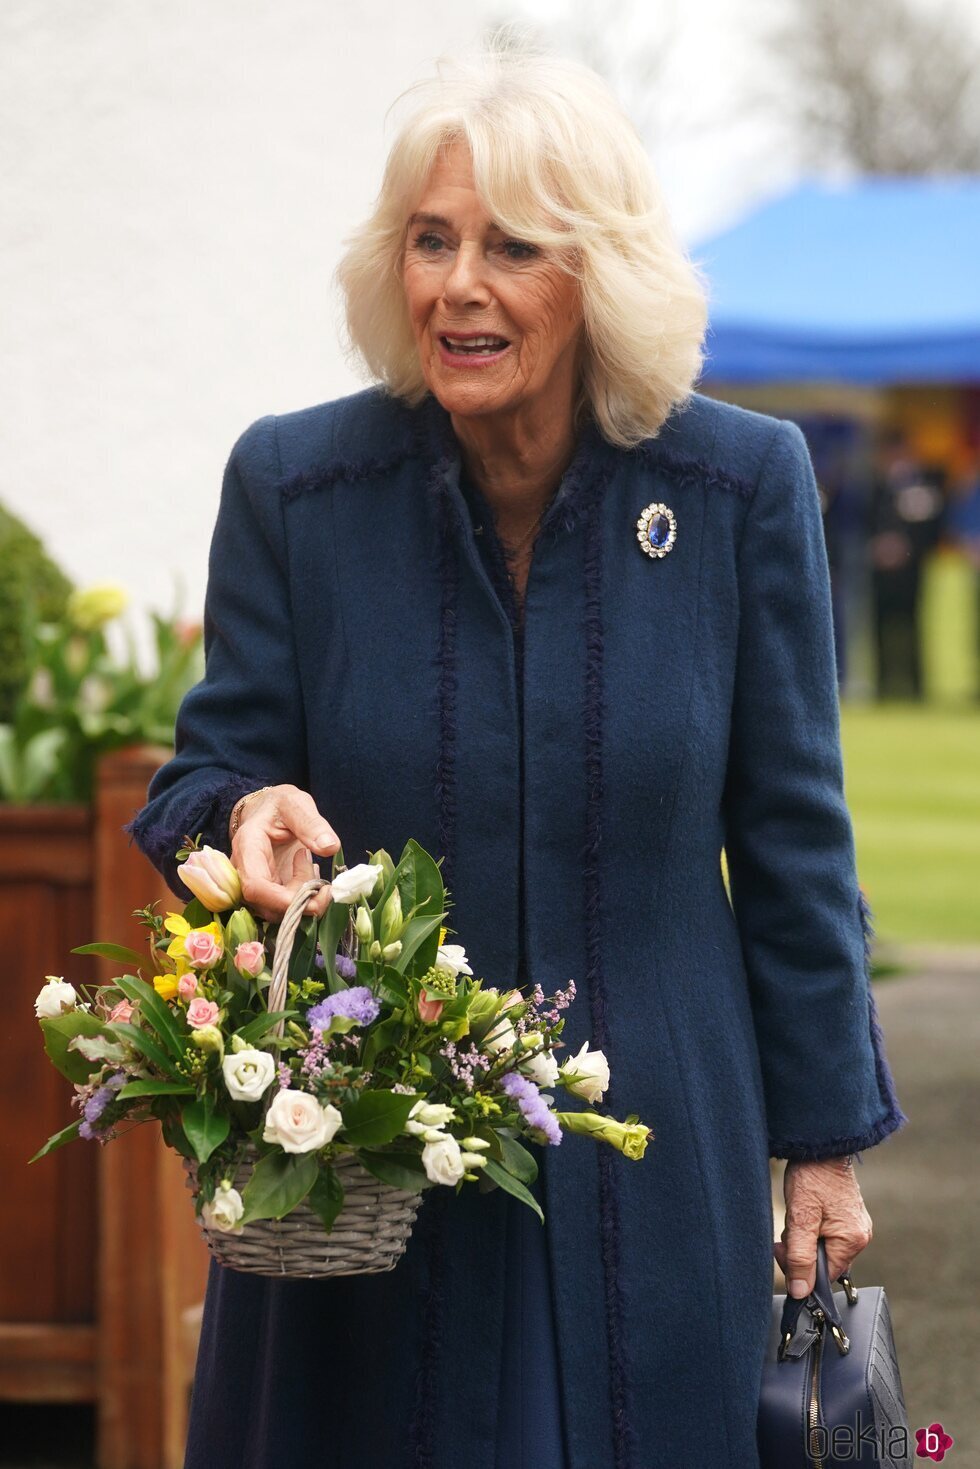 La Reina Camilla continúa con su agenda visitando la Isla de Man